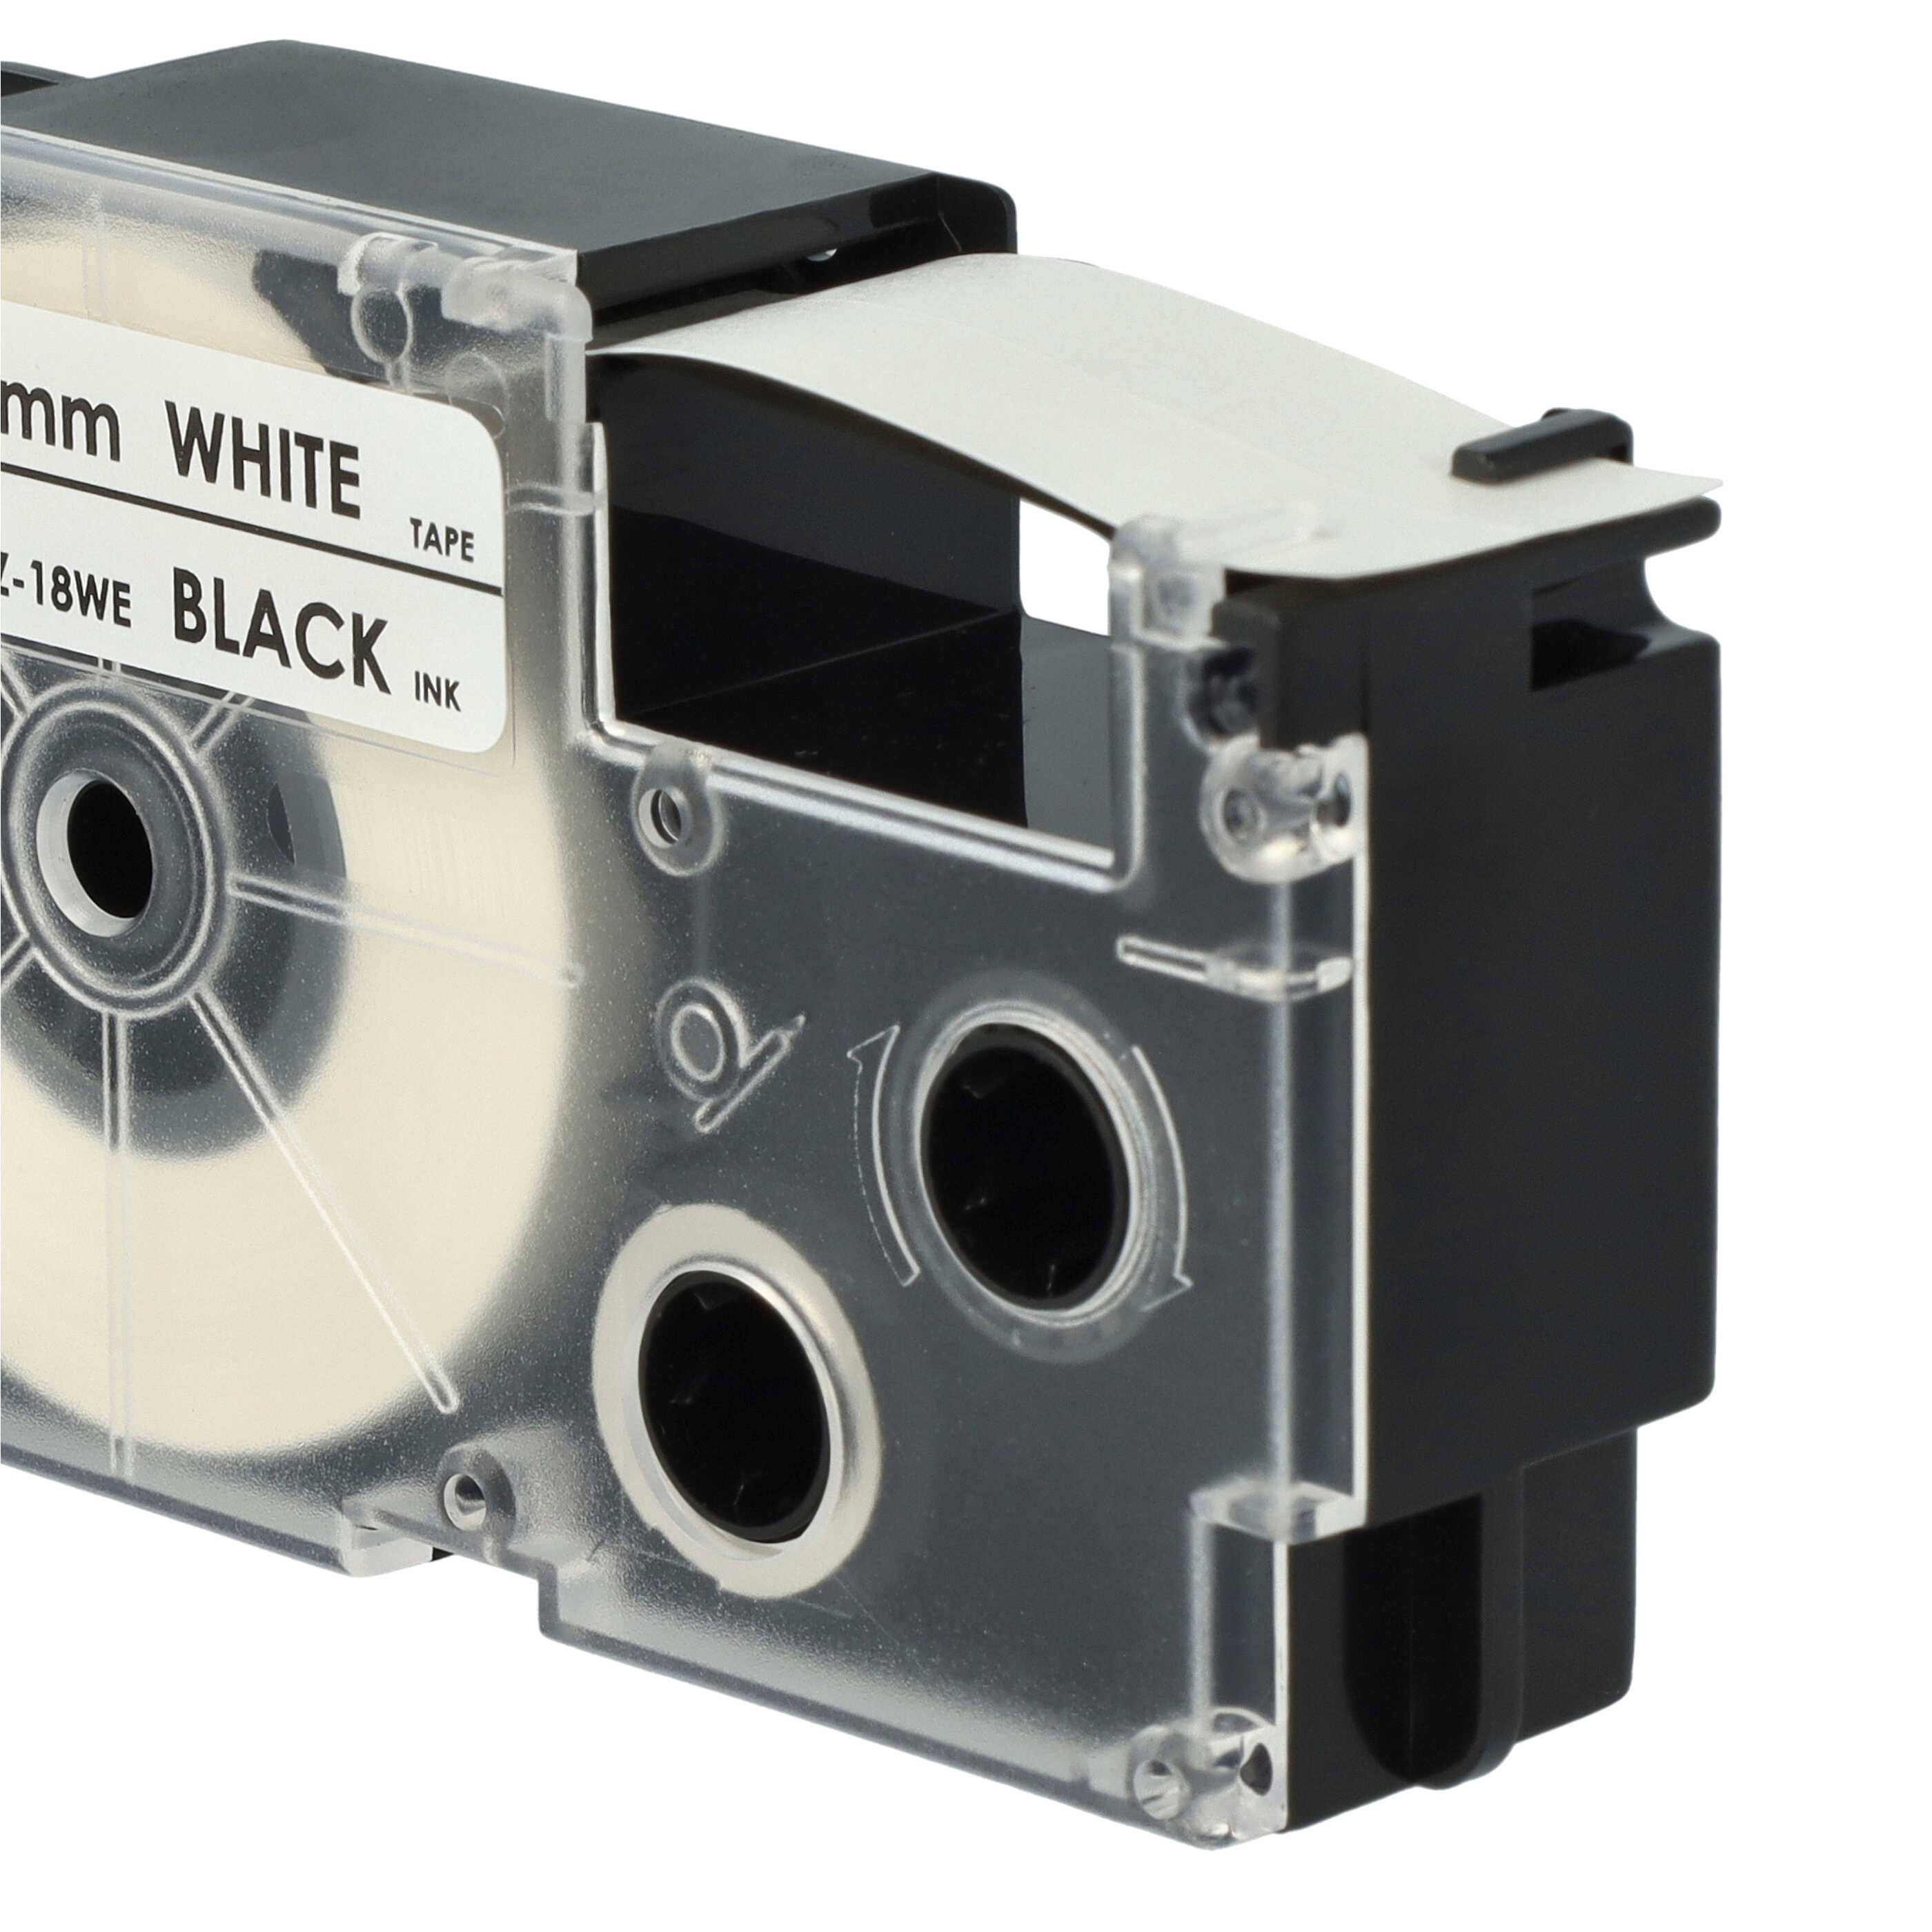 Schriftband als Ersatz für Casio XR-18WE, XR-18WE1 - 18mm Schwarz auf Weiß, pet+ RESIN